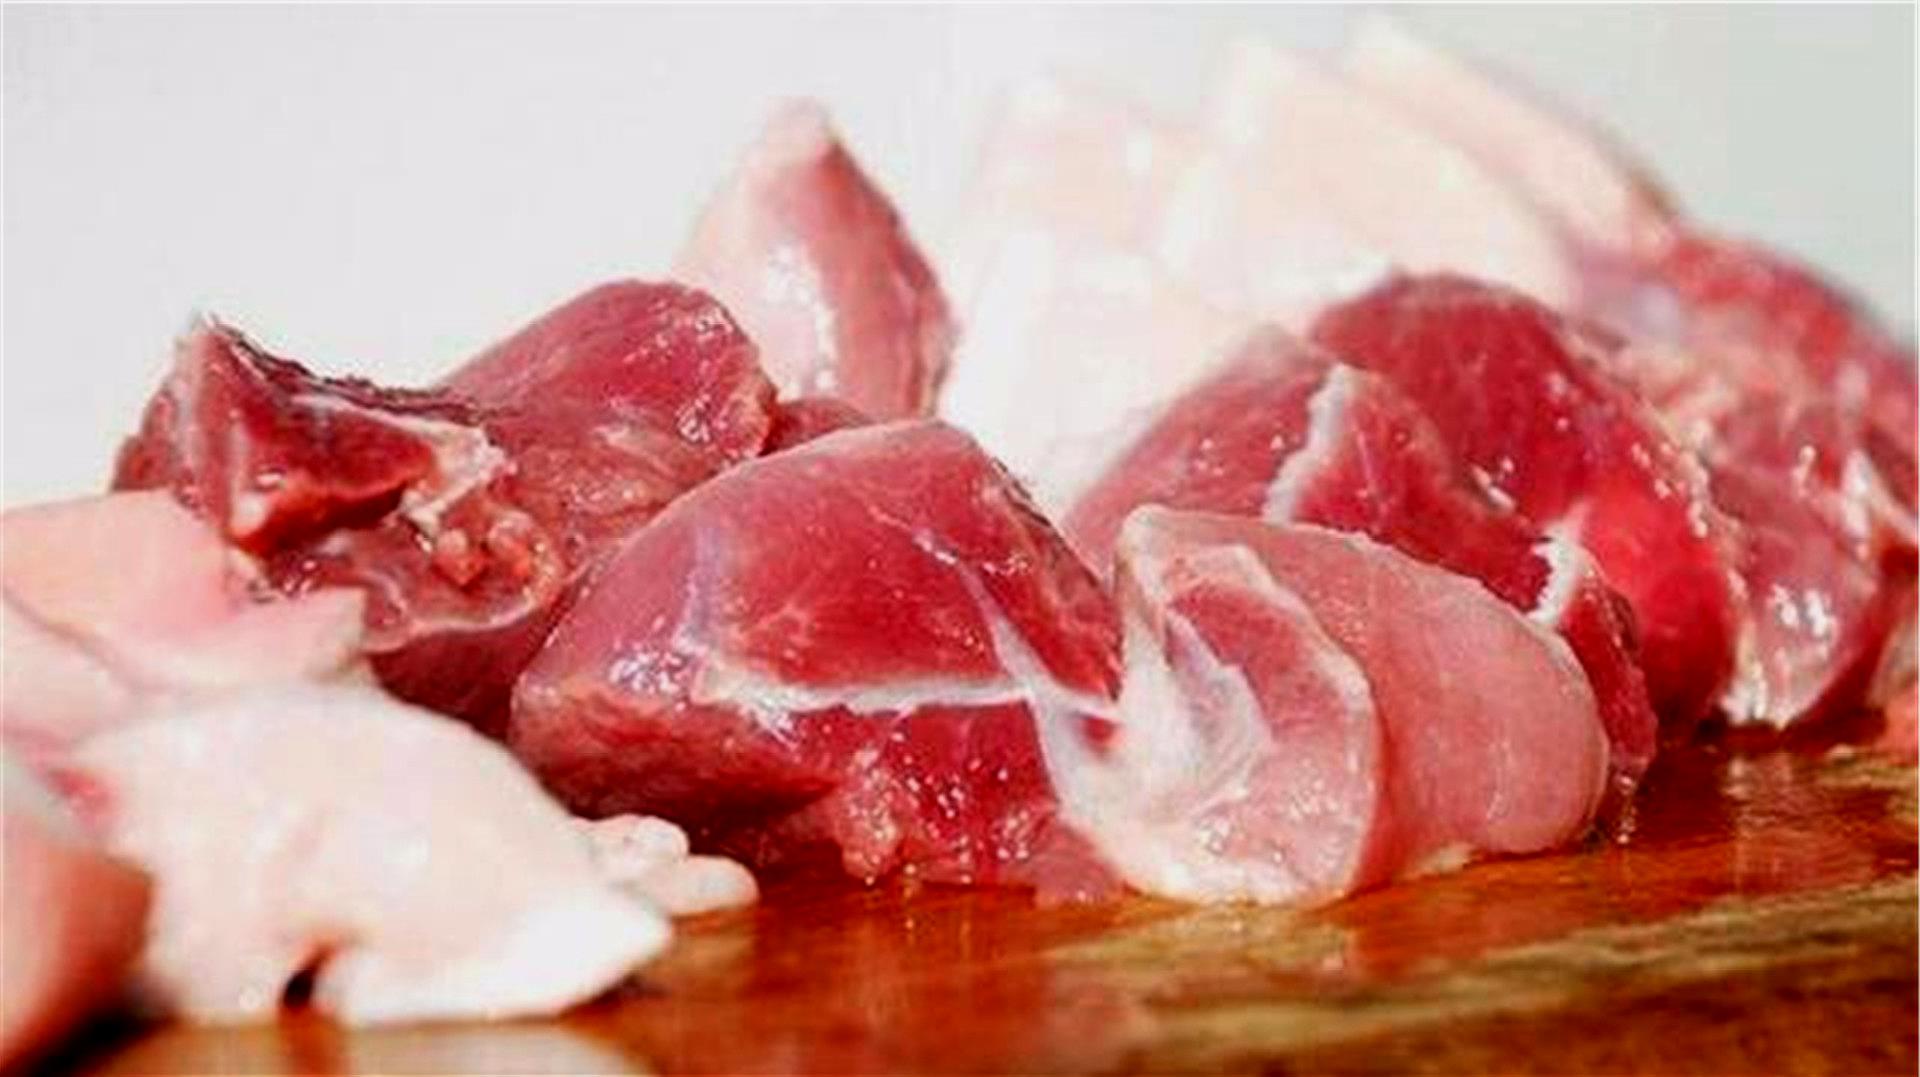 买猪肉多看看,教你几招,轻松辨别死猪肉和鲜猪肉,学会真实用